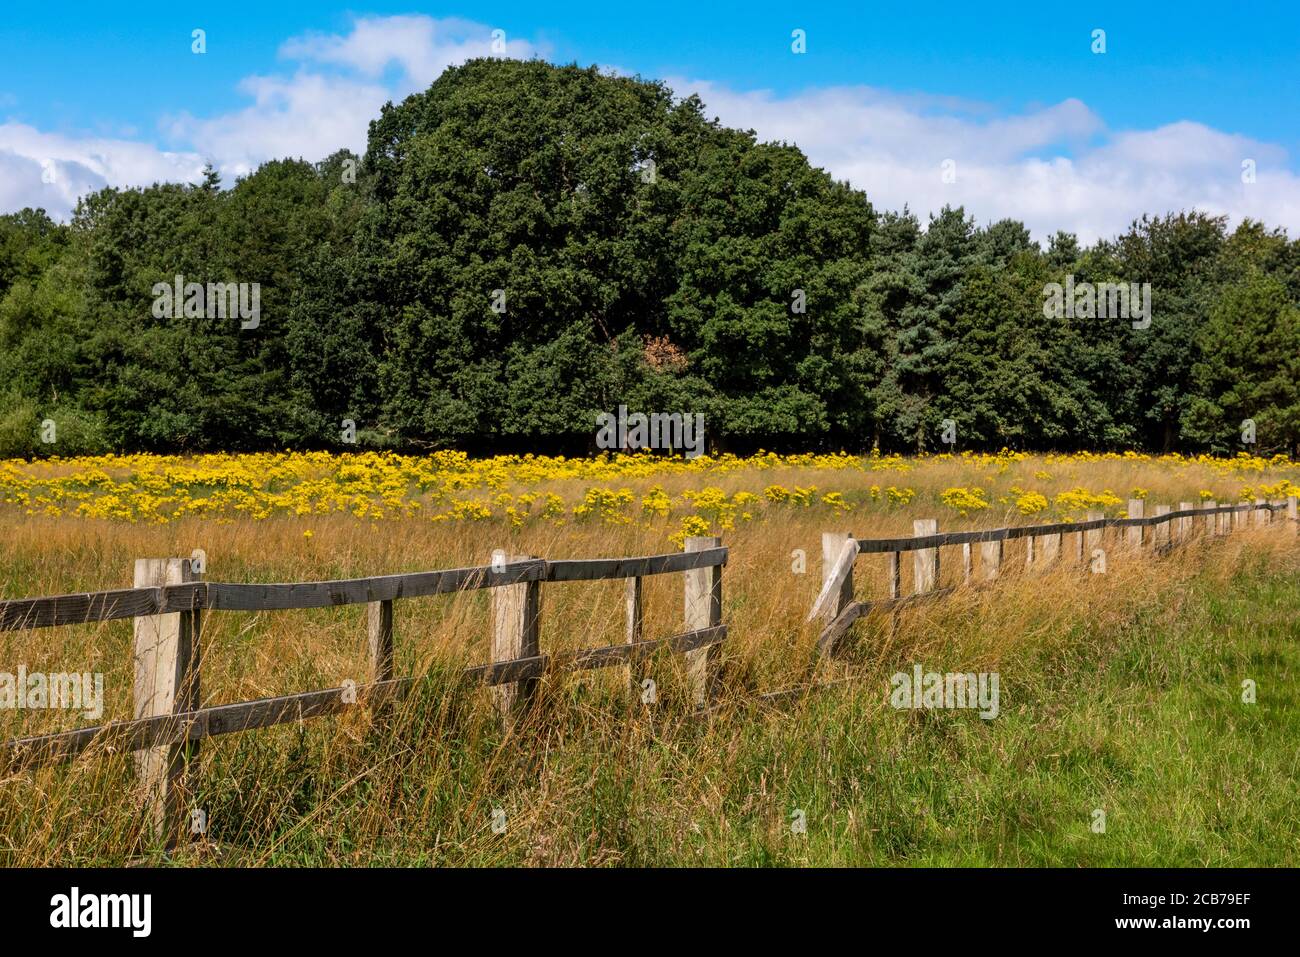 Fleurs sauvages jaunes dans un champ de prairie. Wollaton Park, Nottingham, Angleterre, Royaume-Uni Banque D'Images